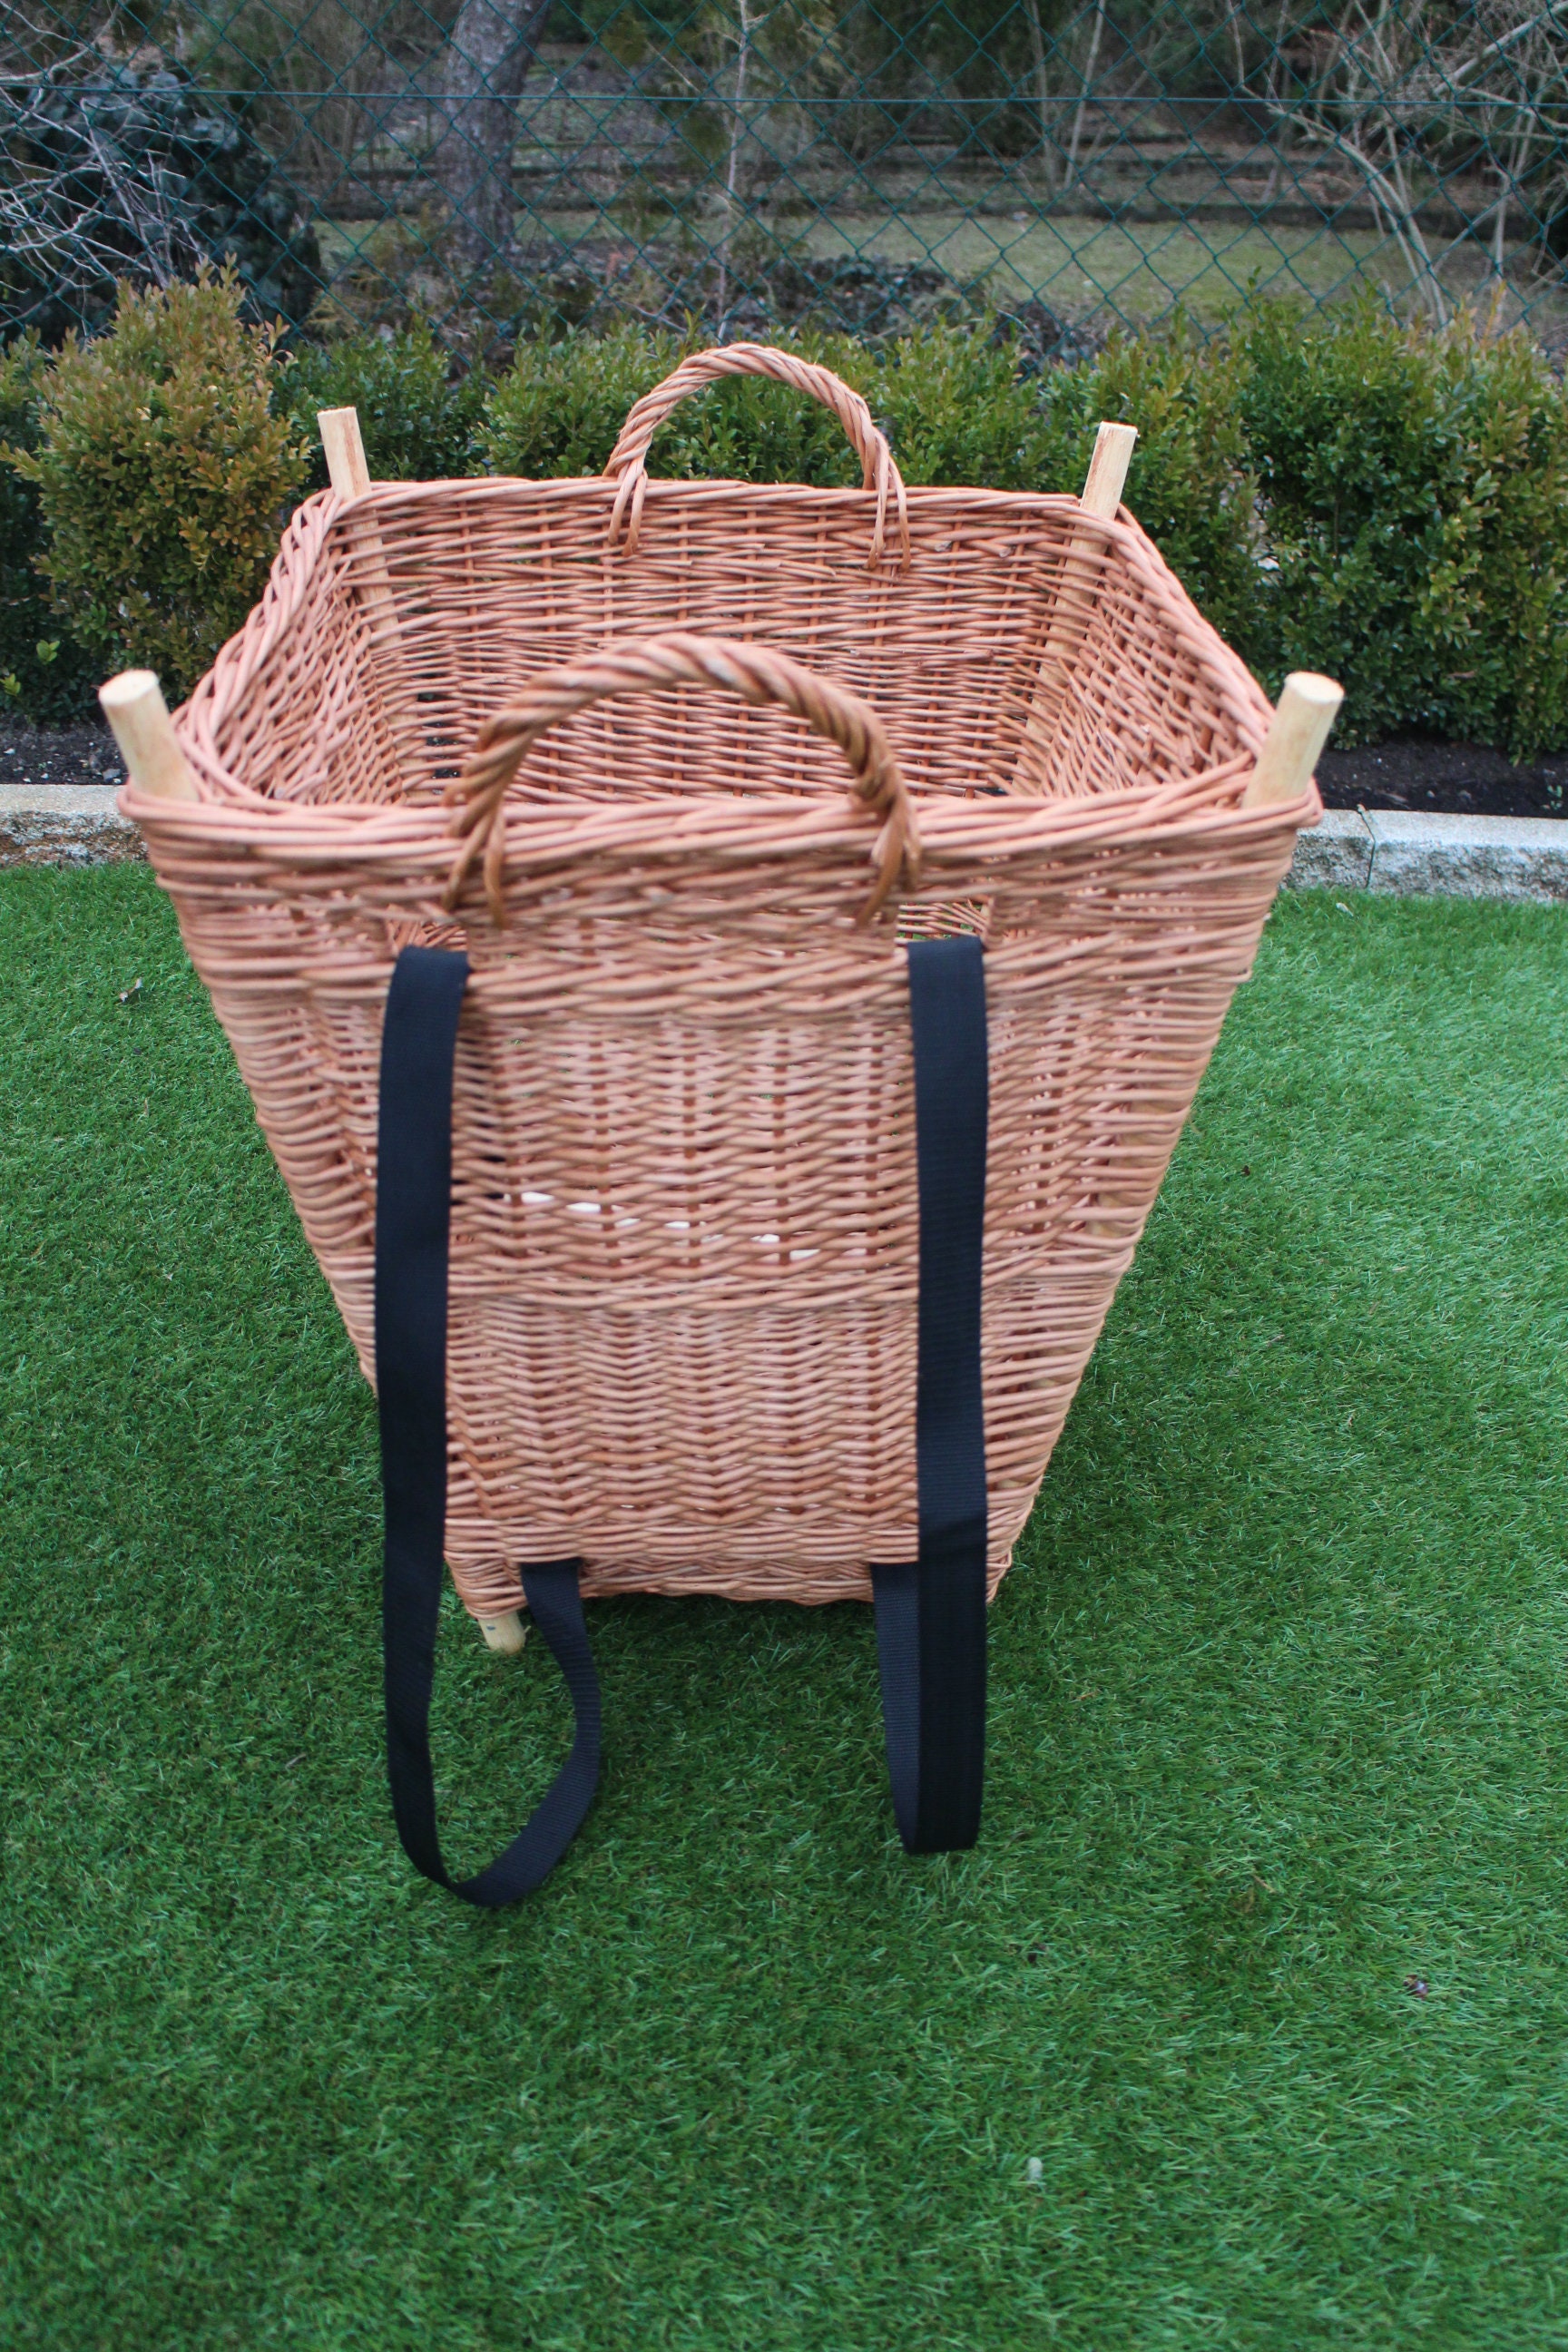 Log Basket Kit, Big Felt for Firewood, Small Basket for Kindling